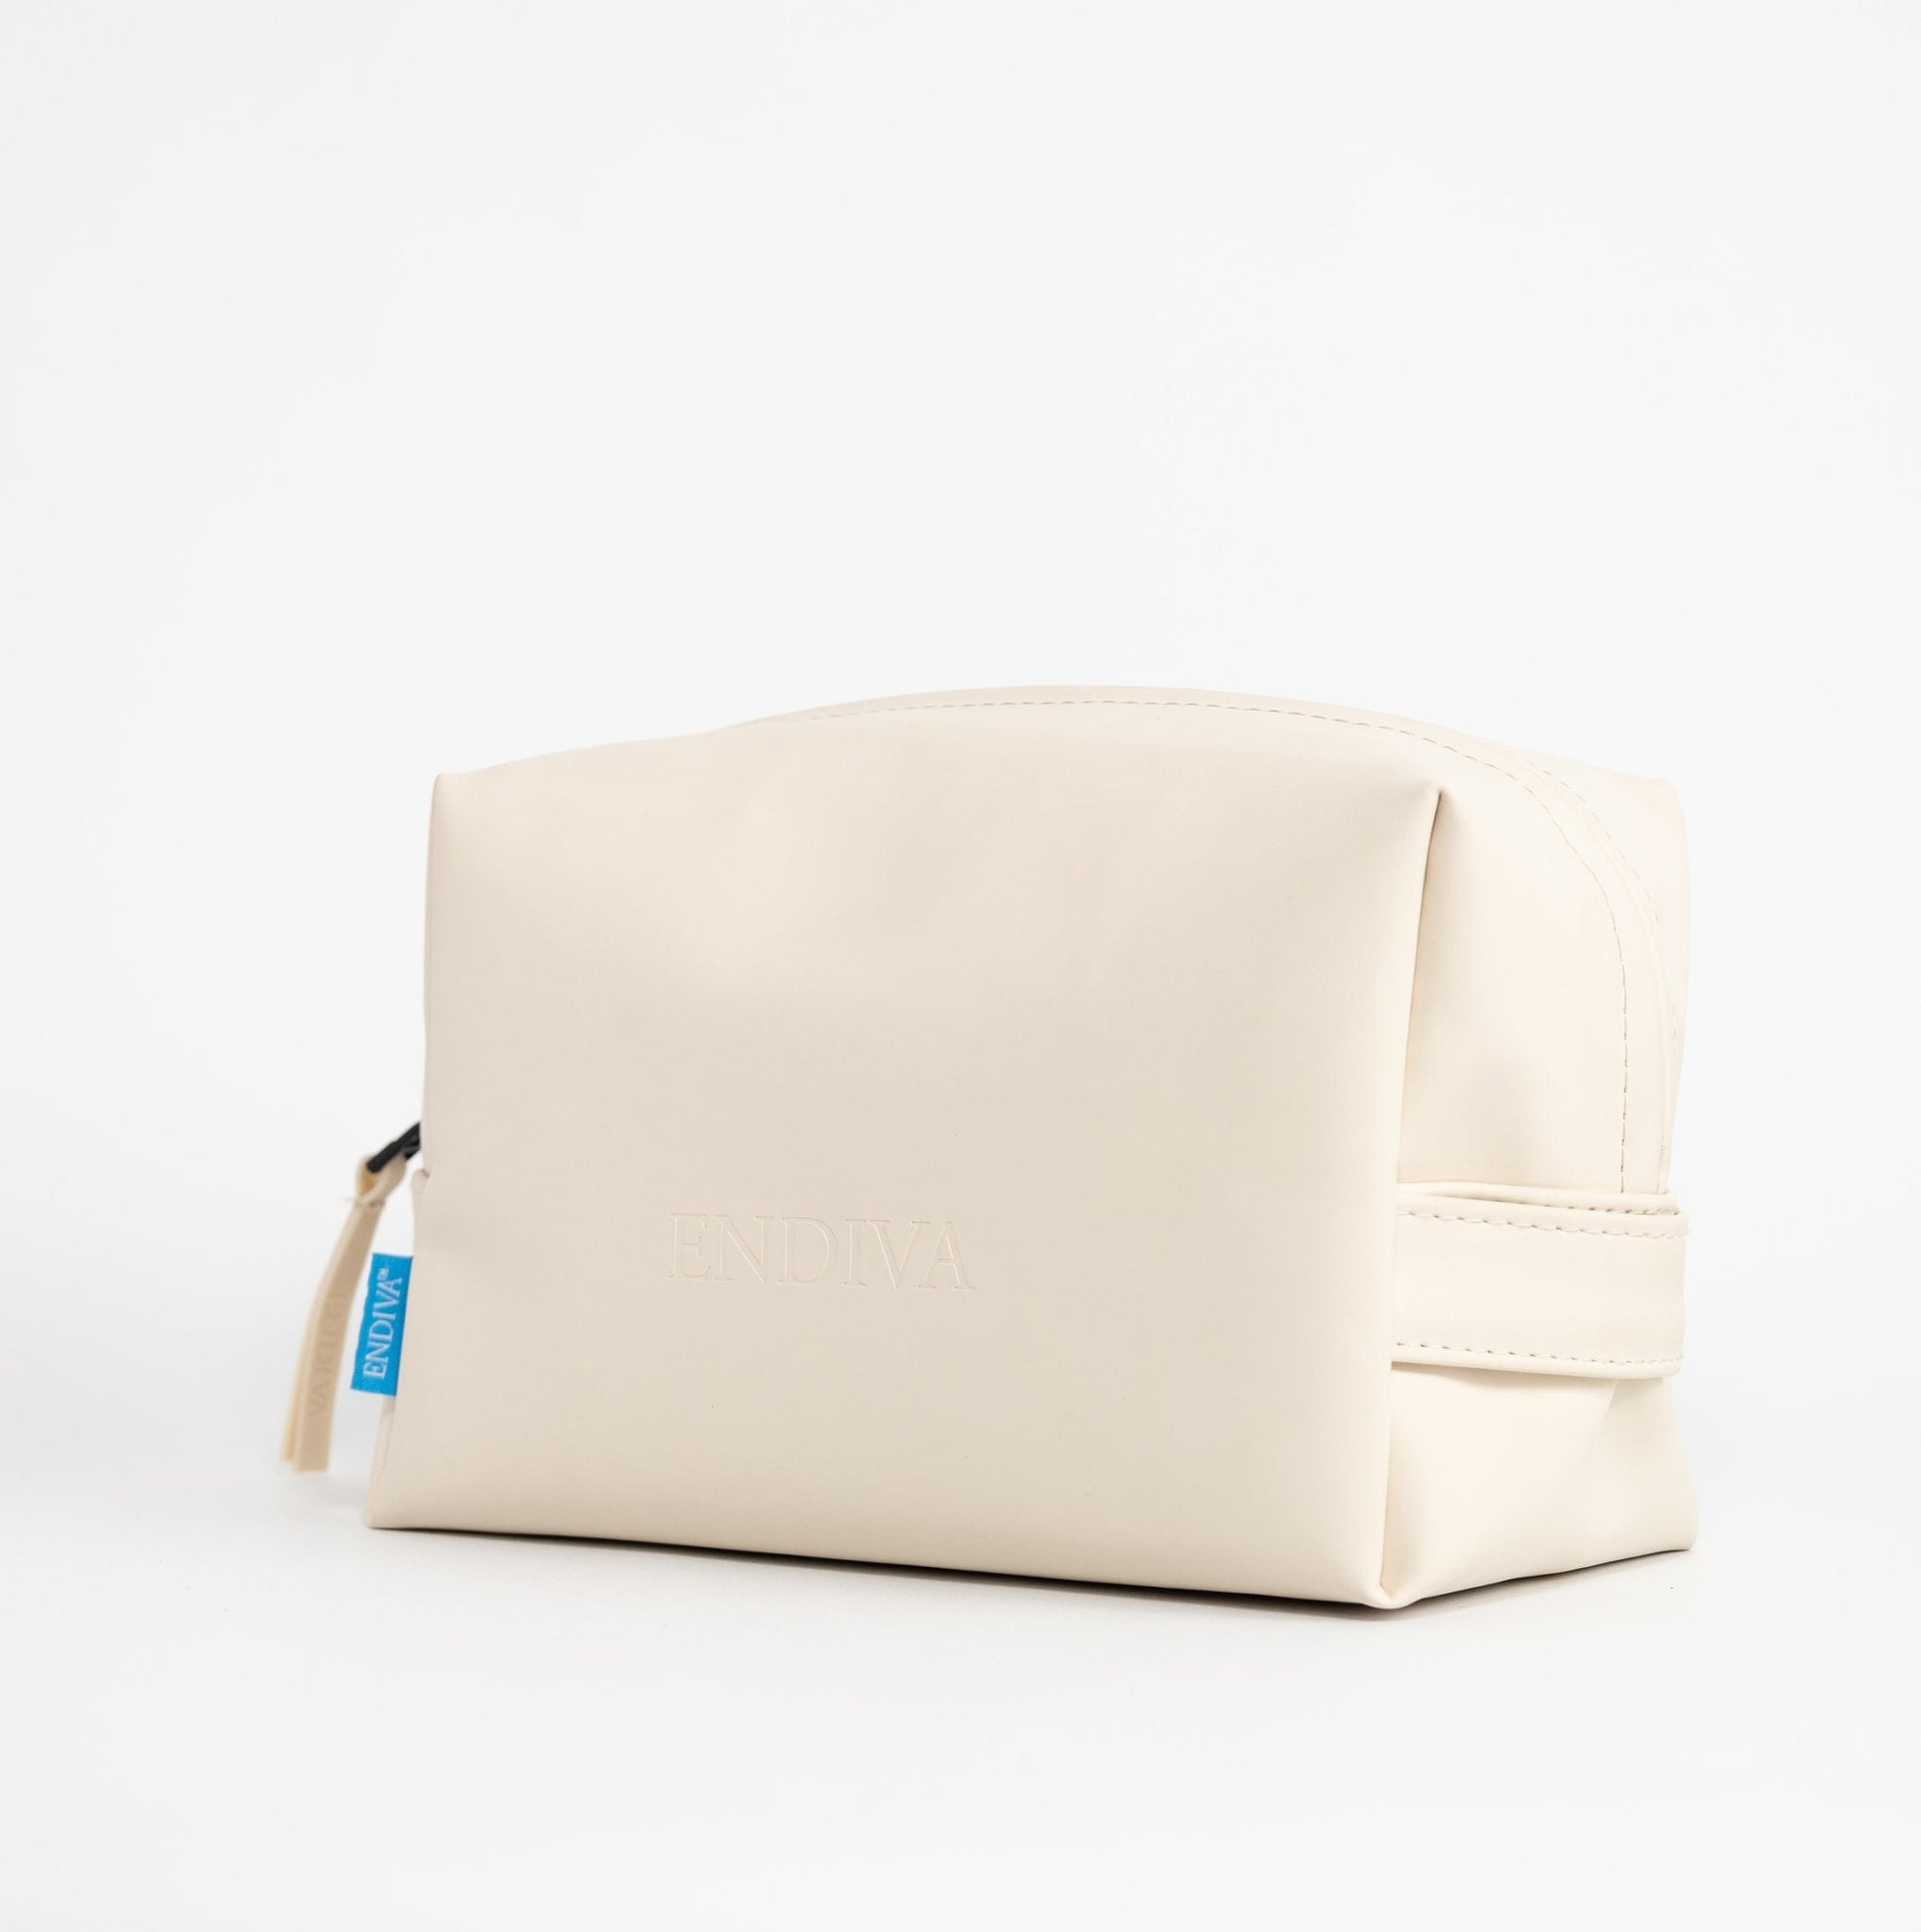 Waterproof Carry Toiletry Bag - EndivaWaterproof Toiletry Bag